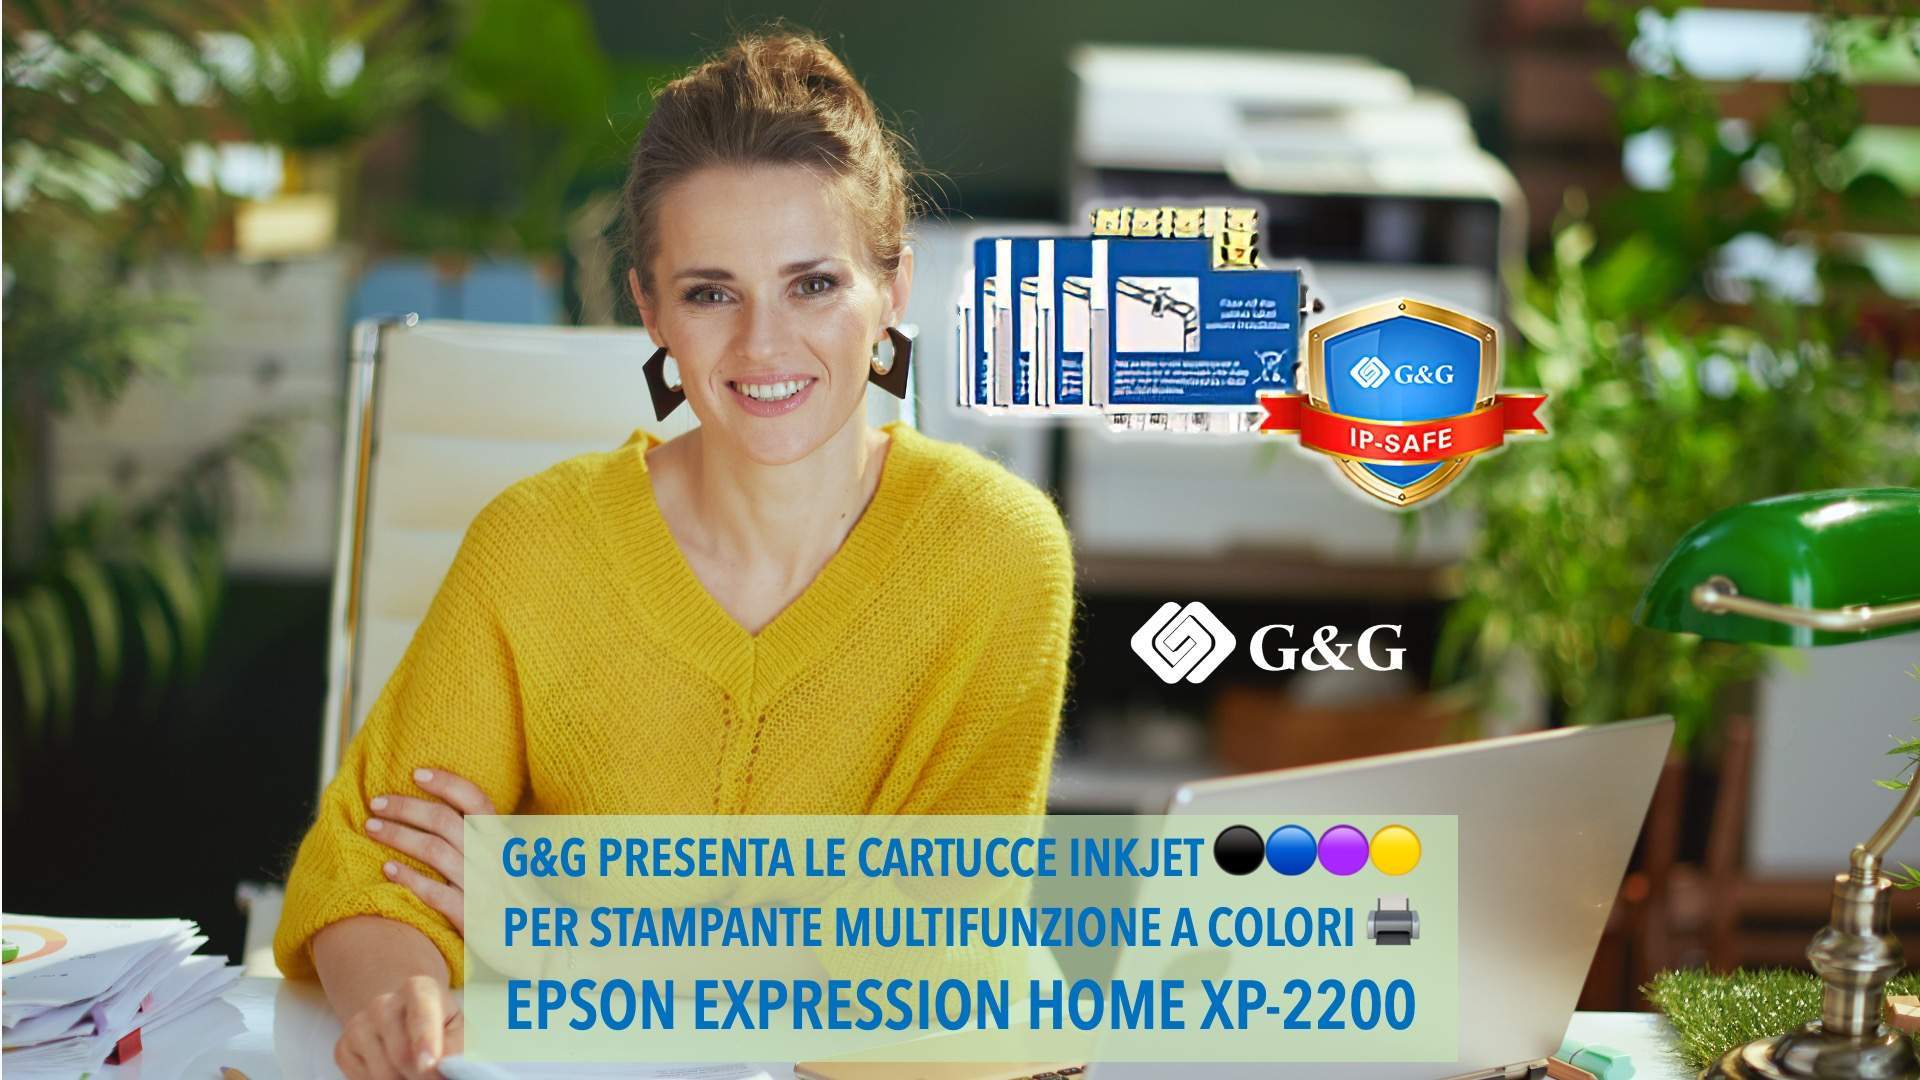 CARTUCCE INKJET BREVETTATE G&G PER EPSON